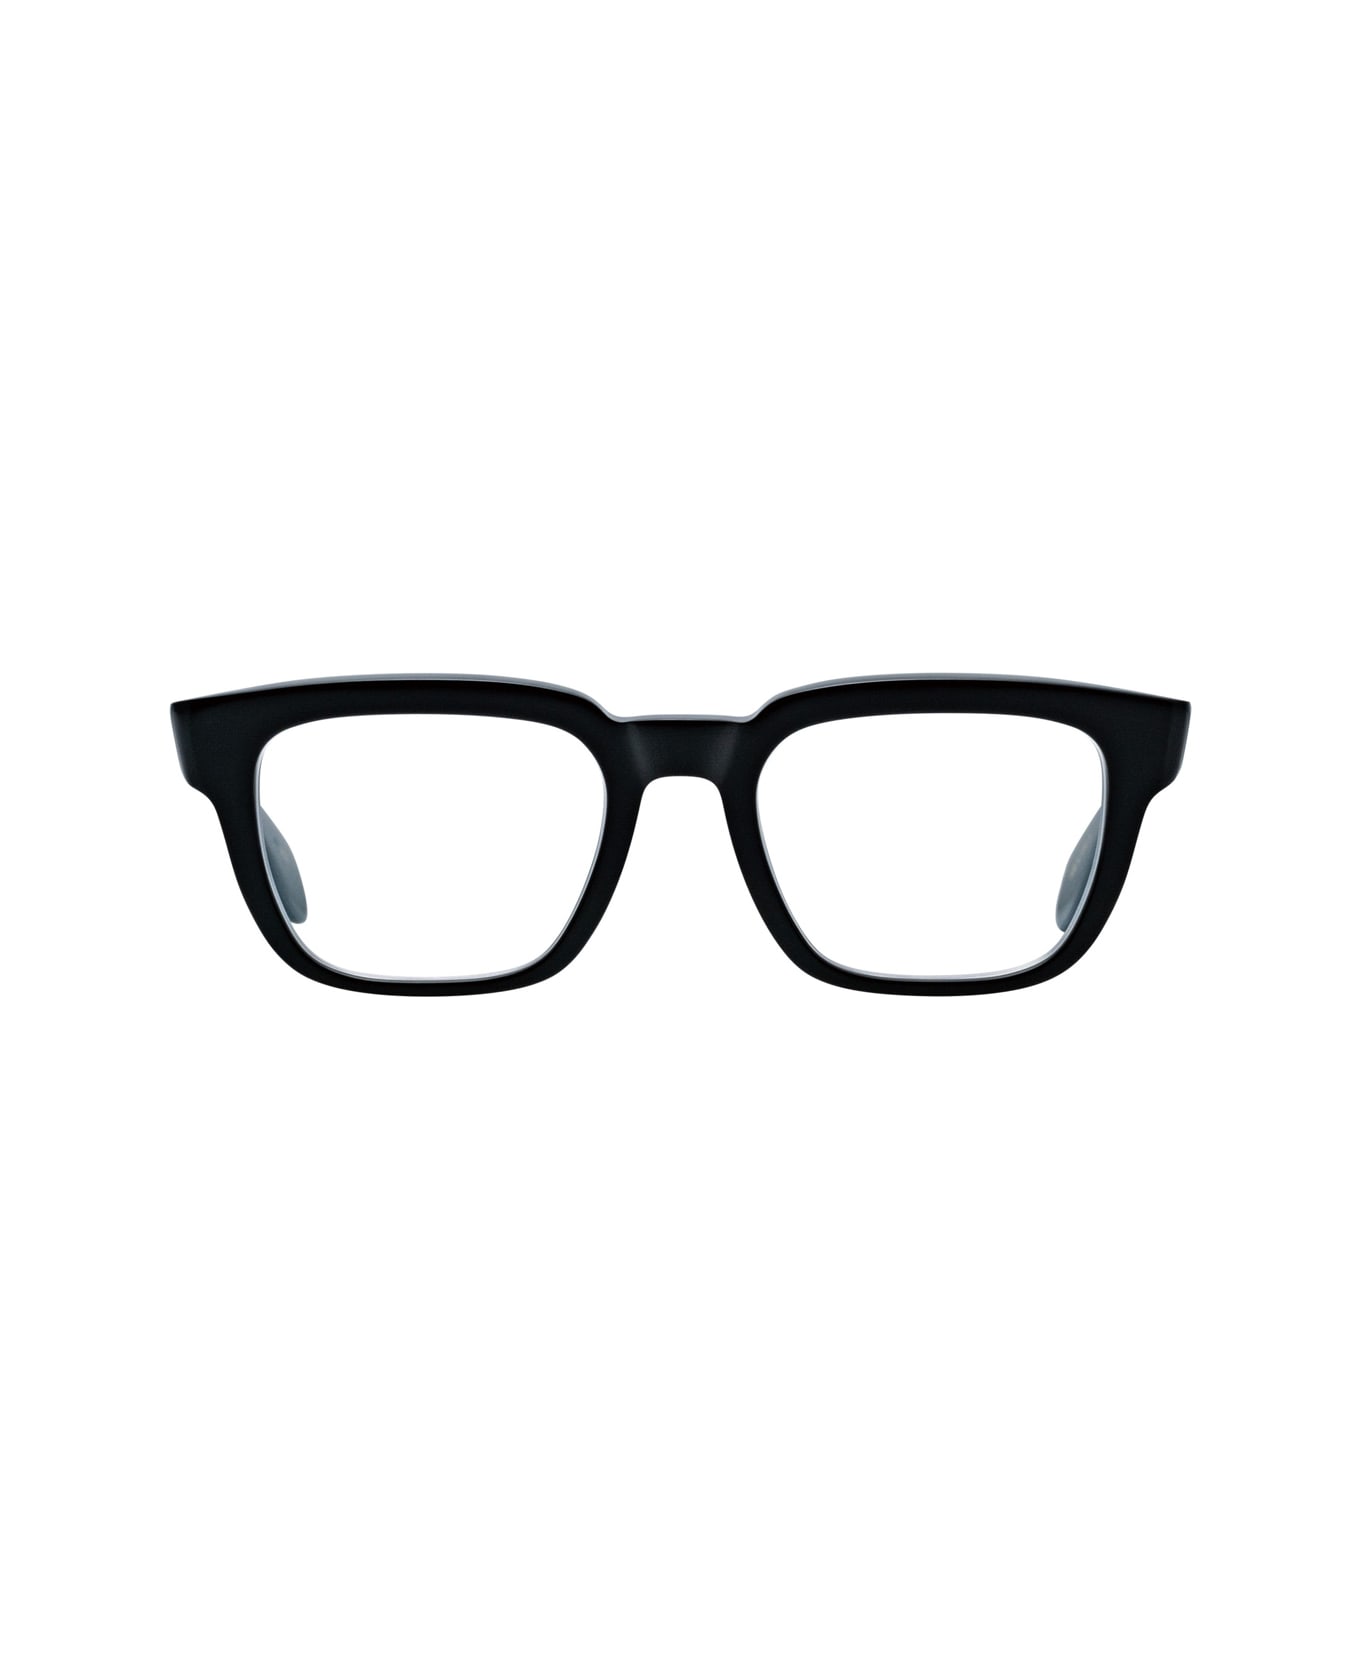 Masunaga Kk 100 19 Glasses - Nero アイウェア